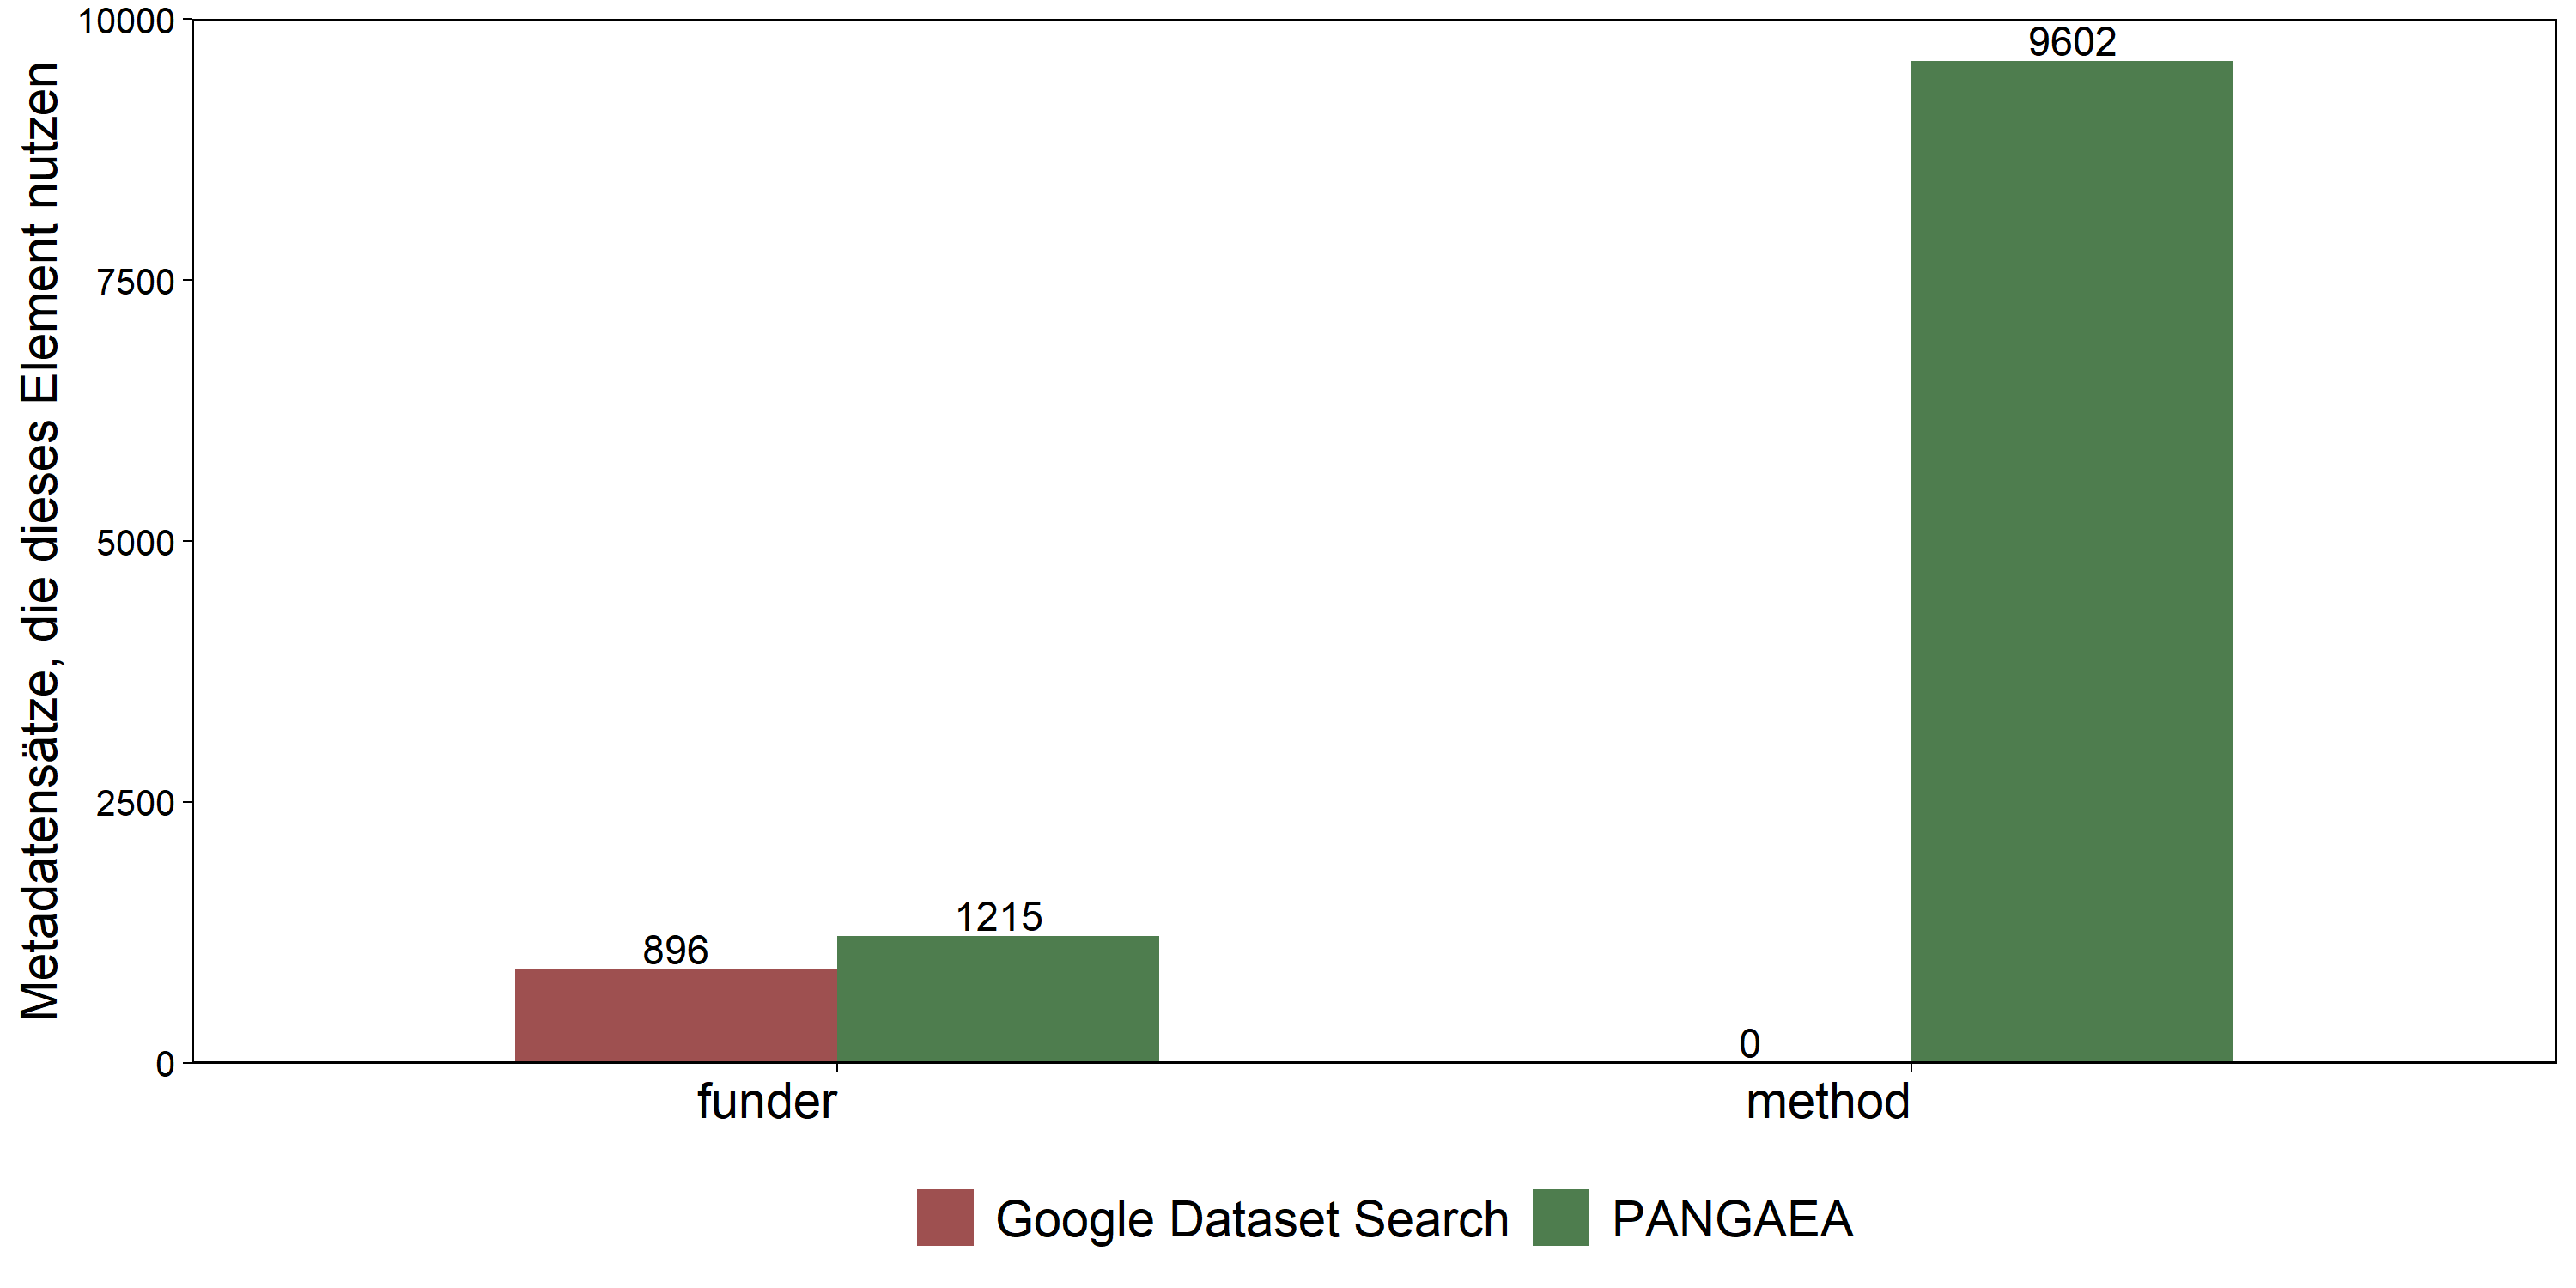 Abbildung 4: Informationen zu Förderern und Methoden in Google Dataset Search und PANGAEA (Sample von 10.000 Metadatensätzen)